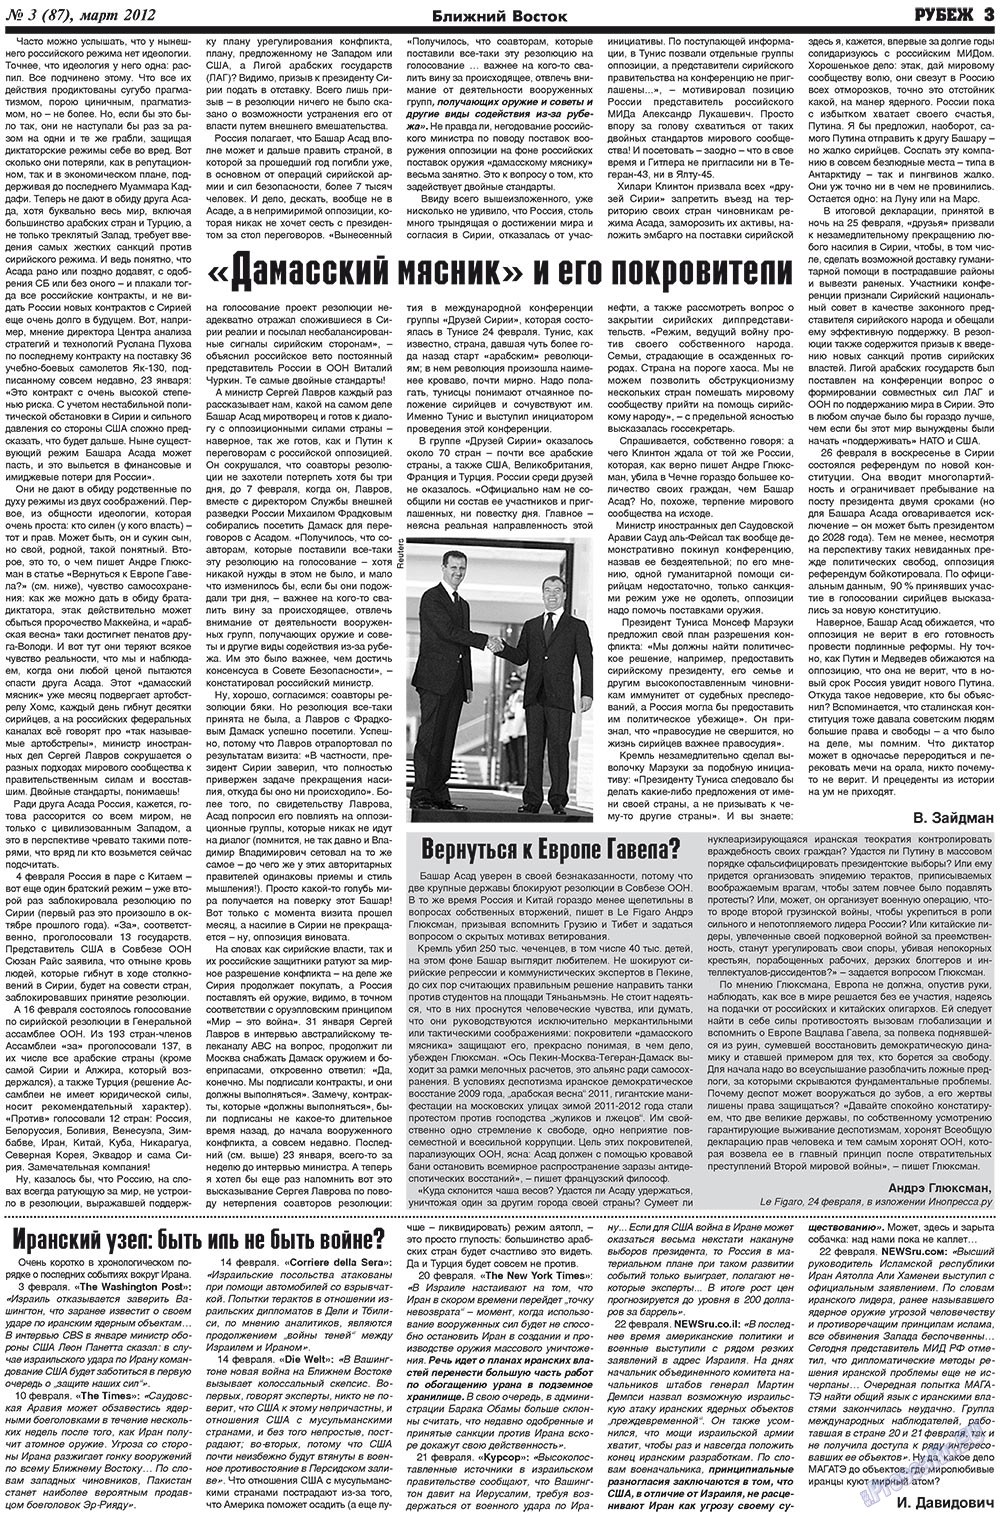 Рубеж (газета). 2012 год, номер 3, стр. 3